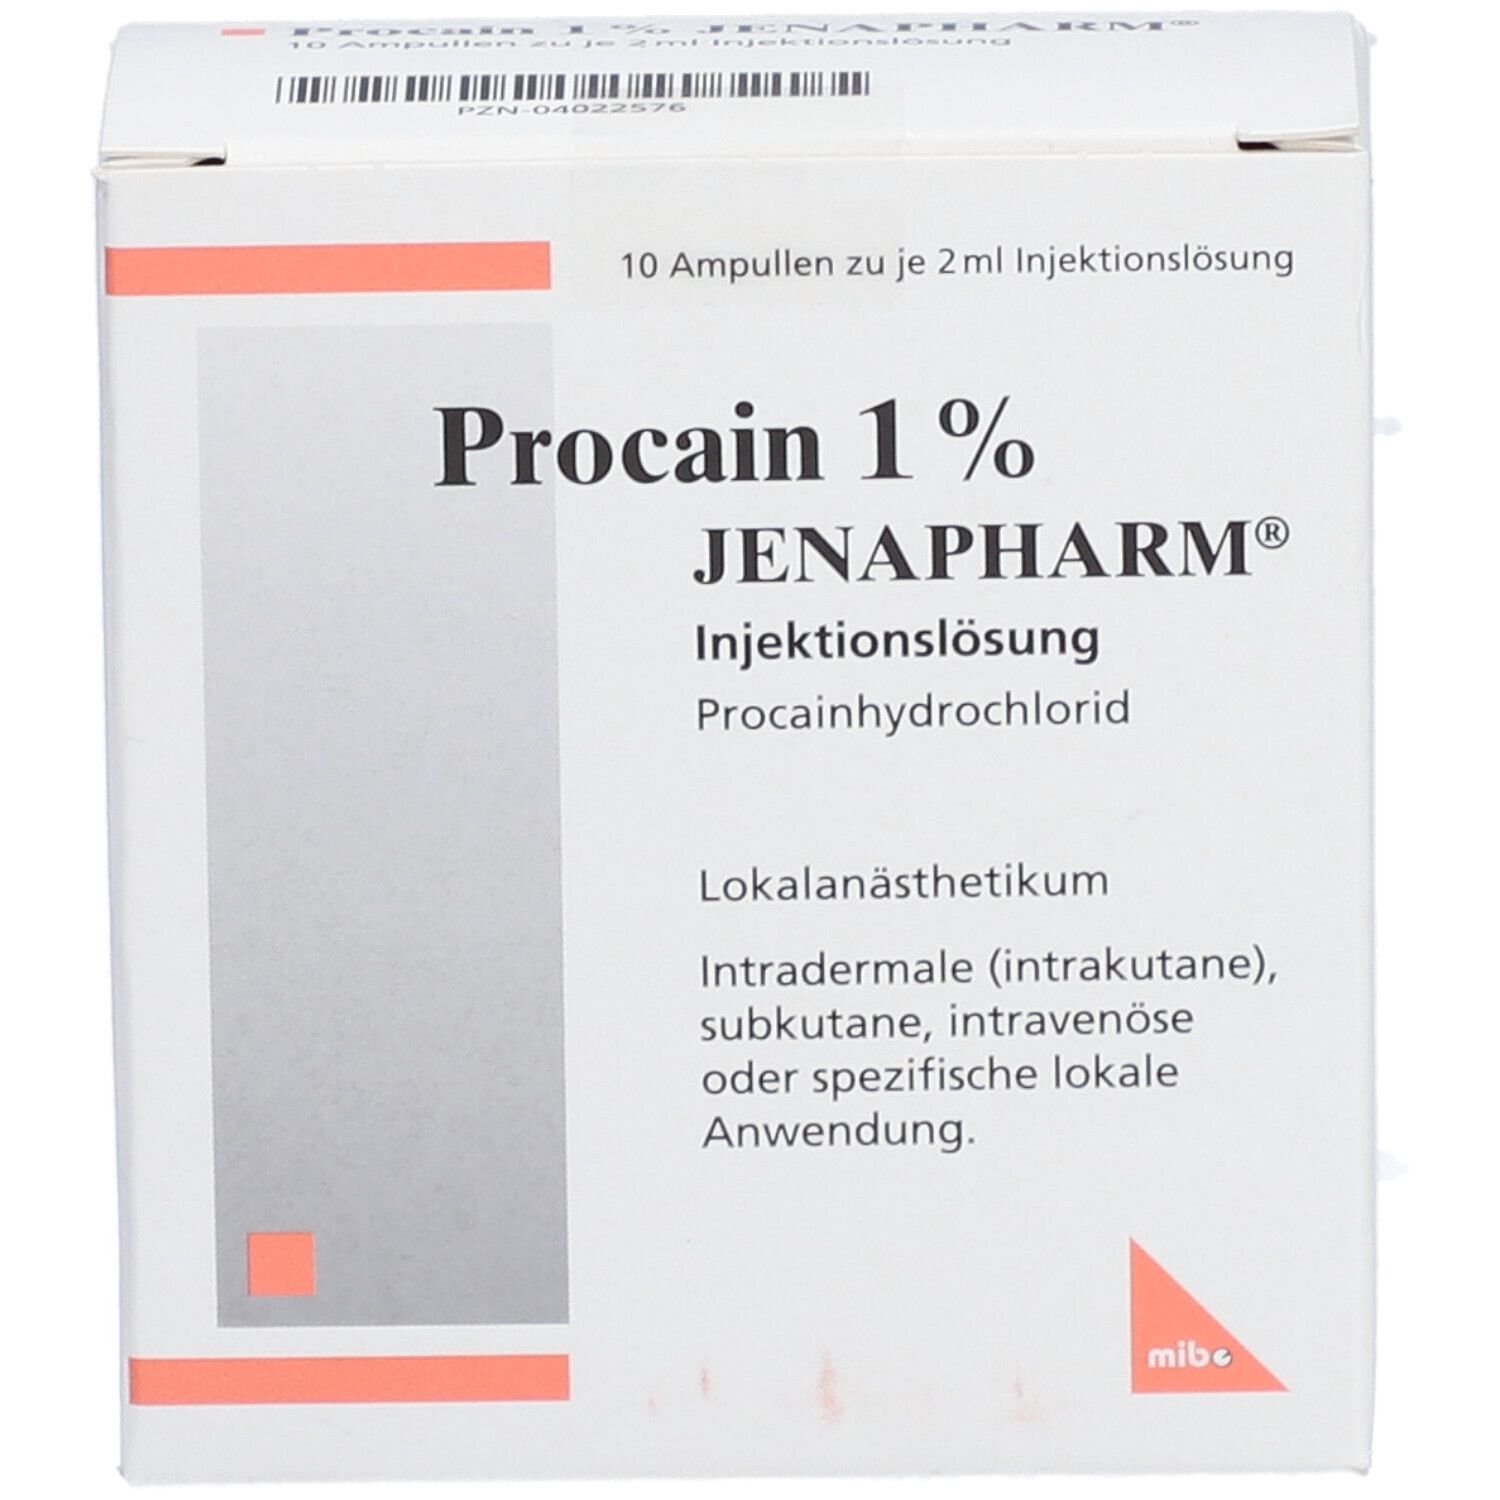 Procain 1% JENAPHARM®